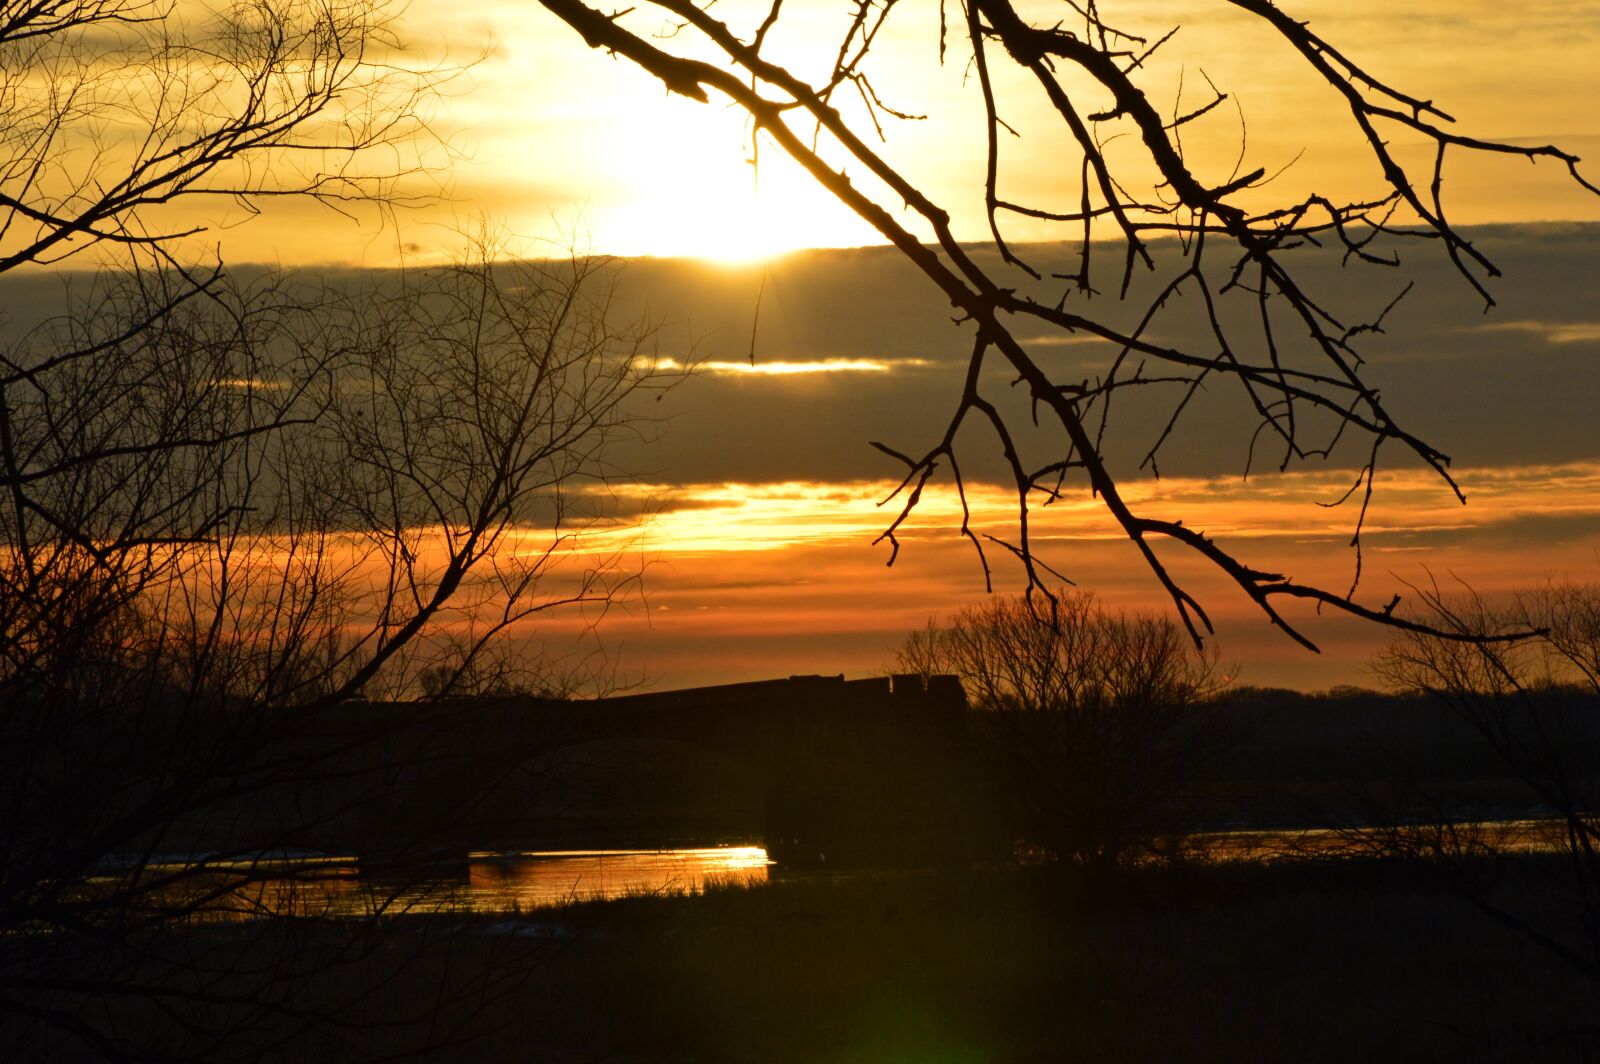 Nikon D3200 sample photo. Sunrise, river landscape, landscape photography